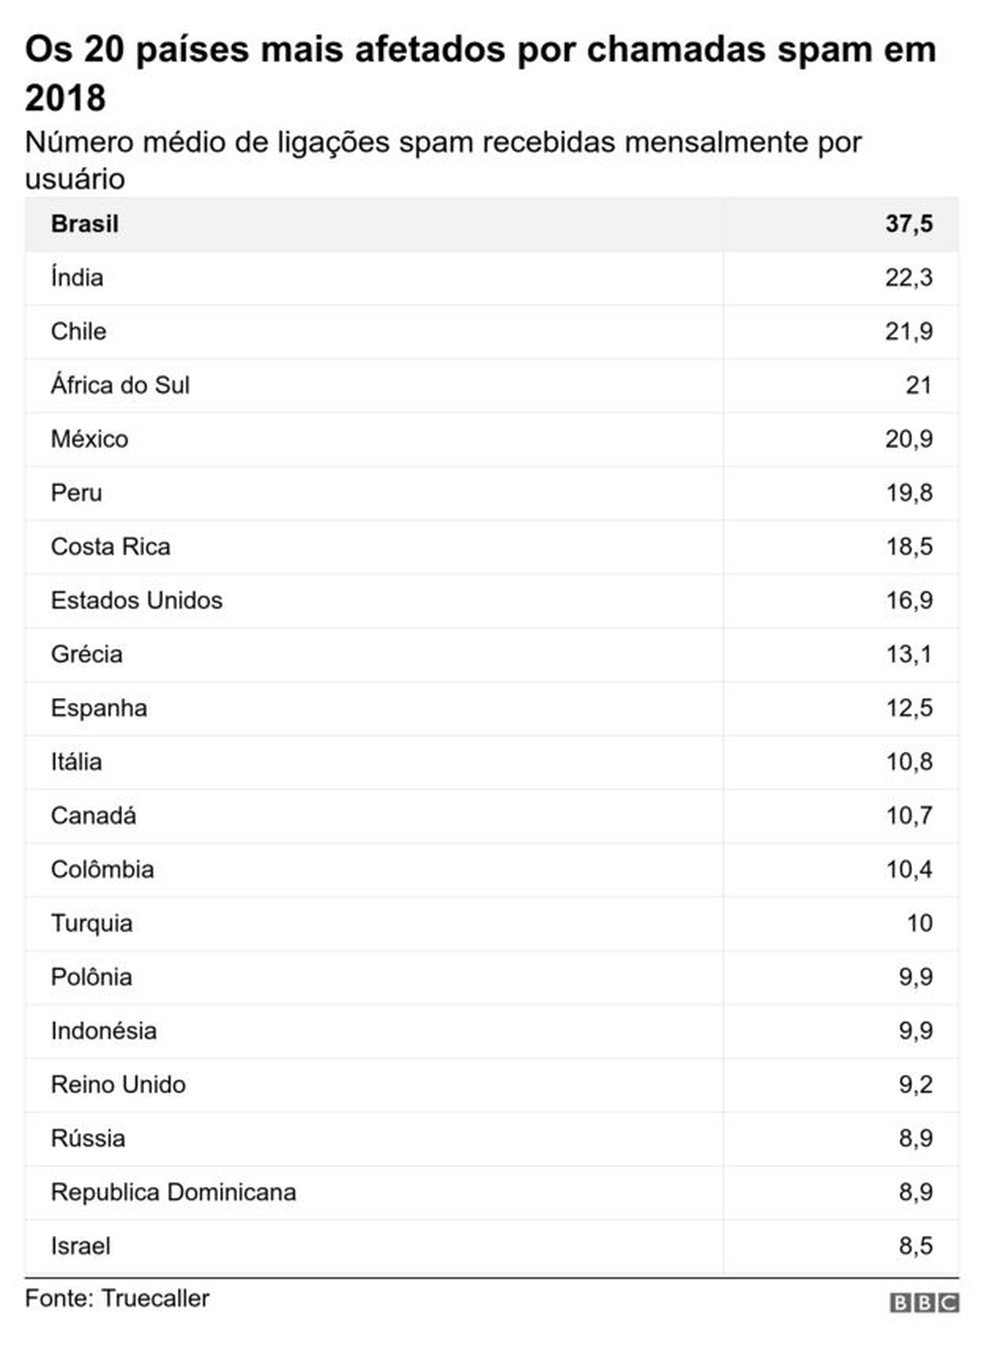 Os 20 países com mais afetados por chamadas spam em 2018: número médio de ligações spam recebidas mensalmente por usuário — Foto: BBC